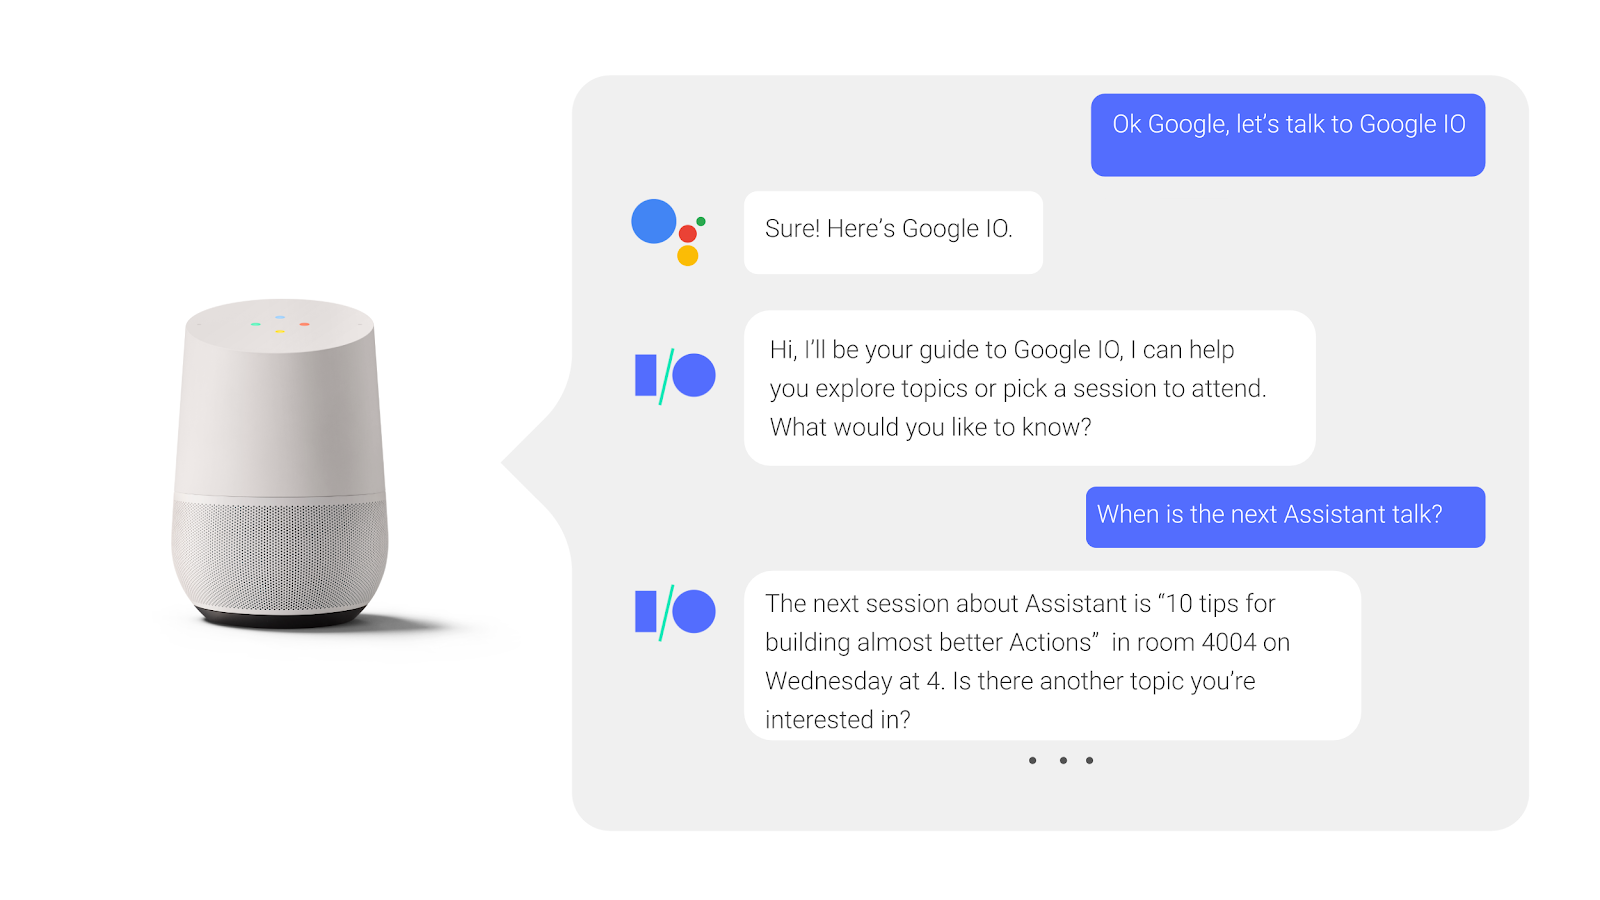 Google アシスタントとの双方向の会話で、ユーザーは会議セッションの開始について質問し、その回答を受け取ります。